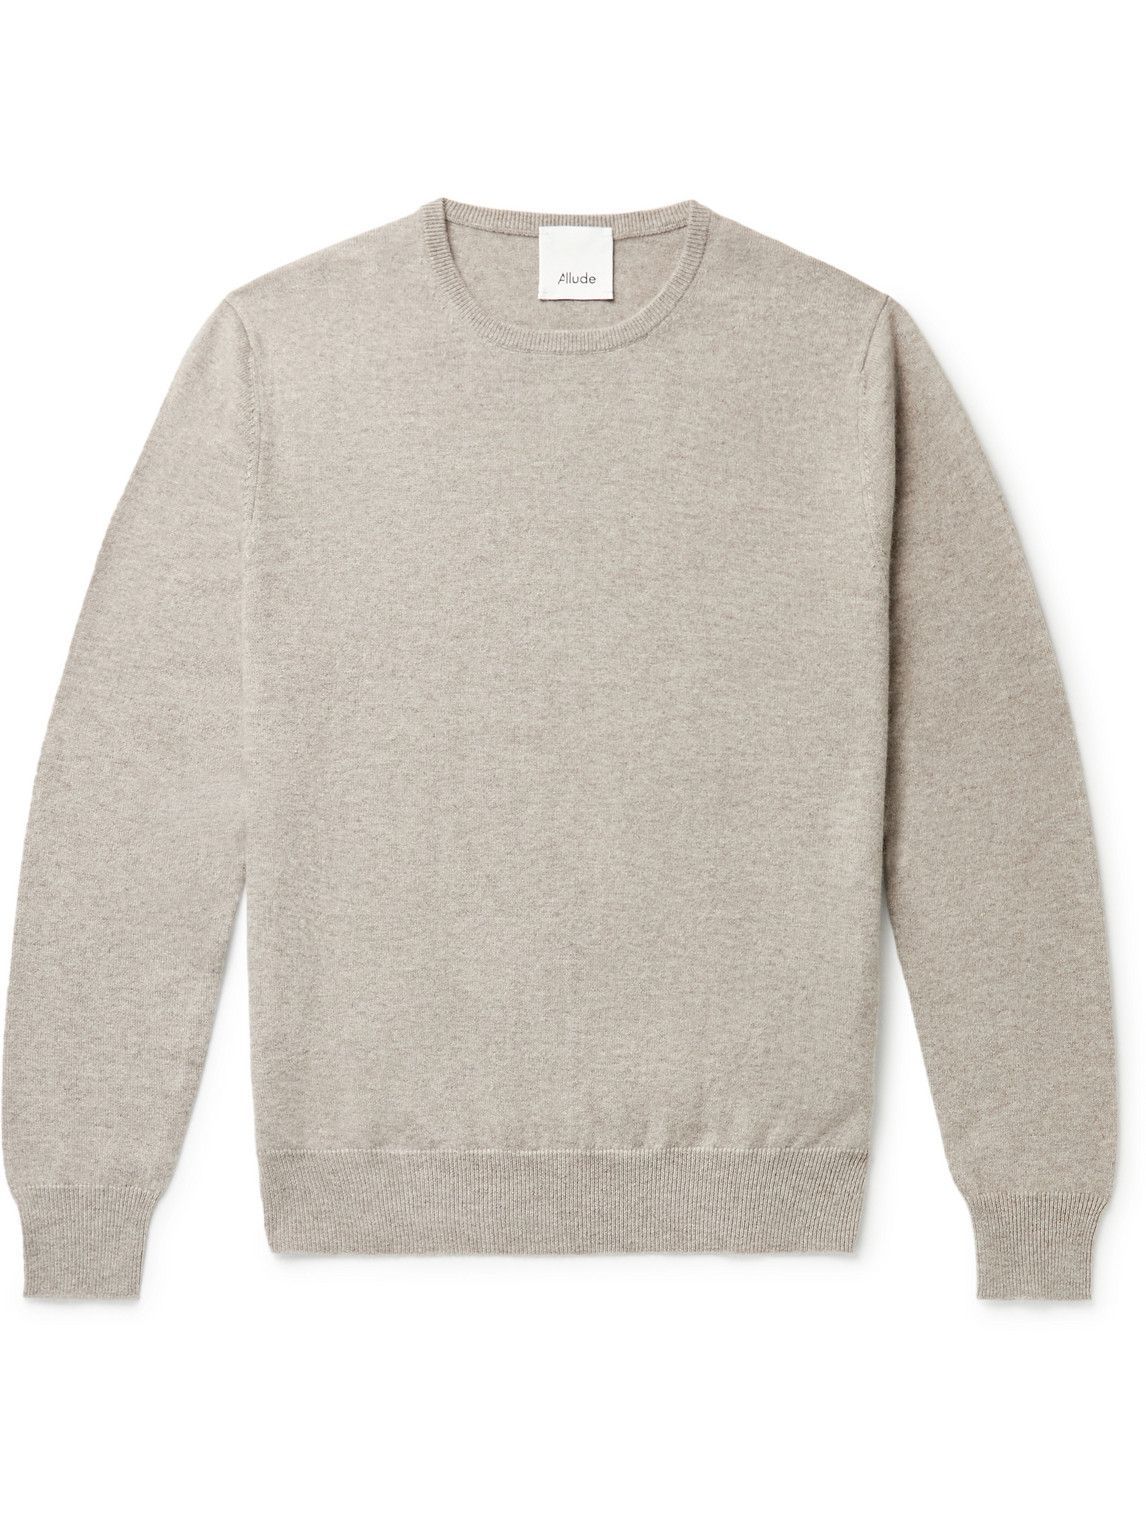 Allude - Cashmere Sweater - Neutrals